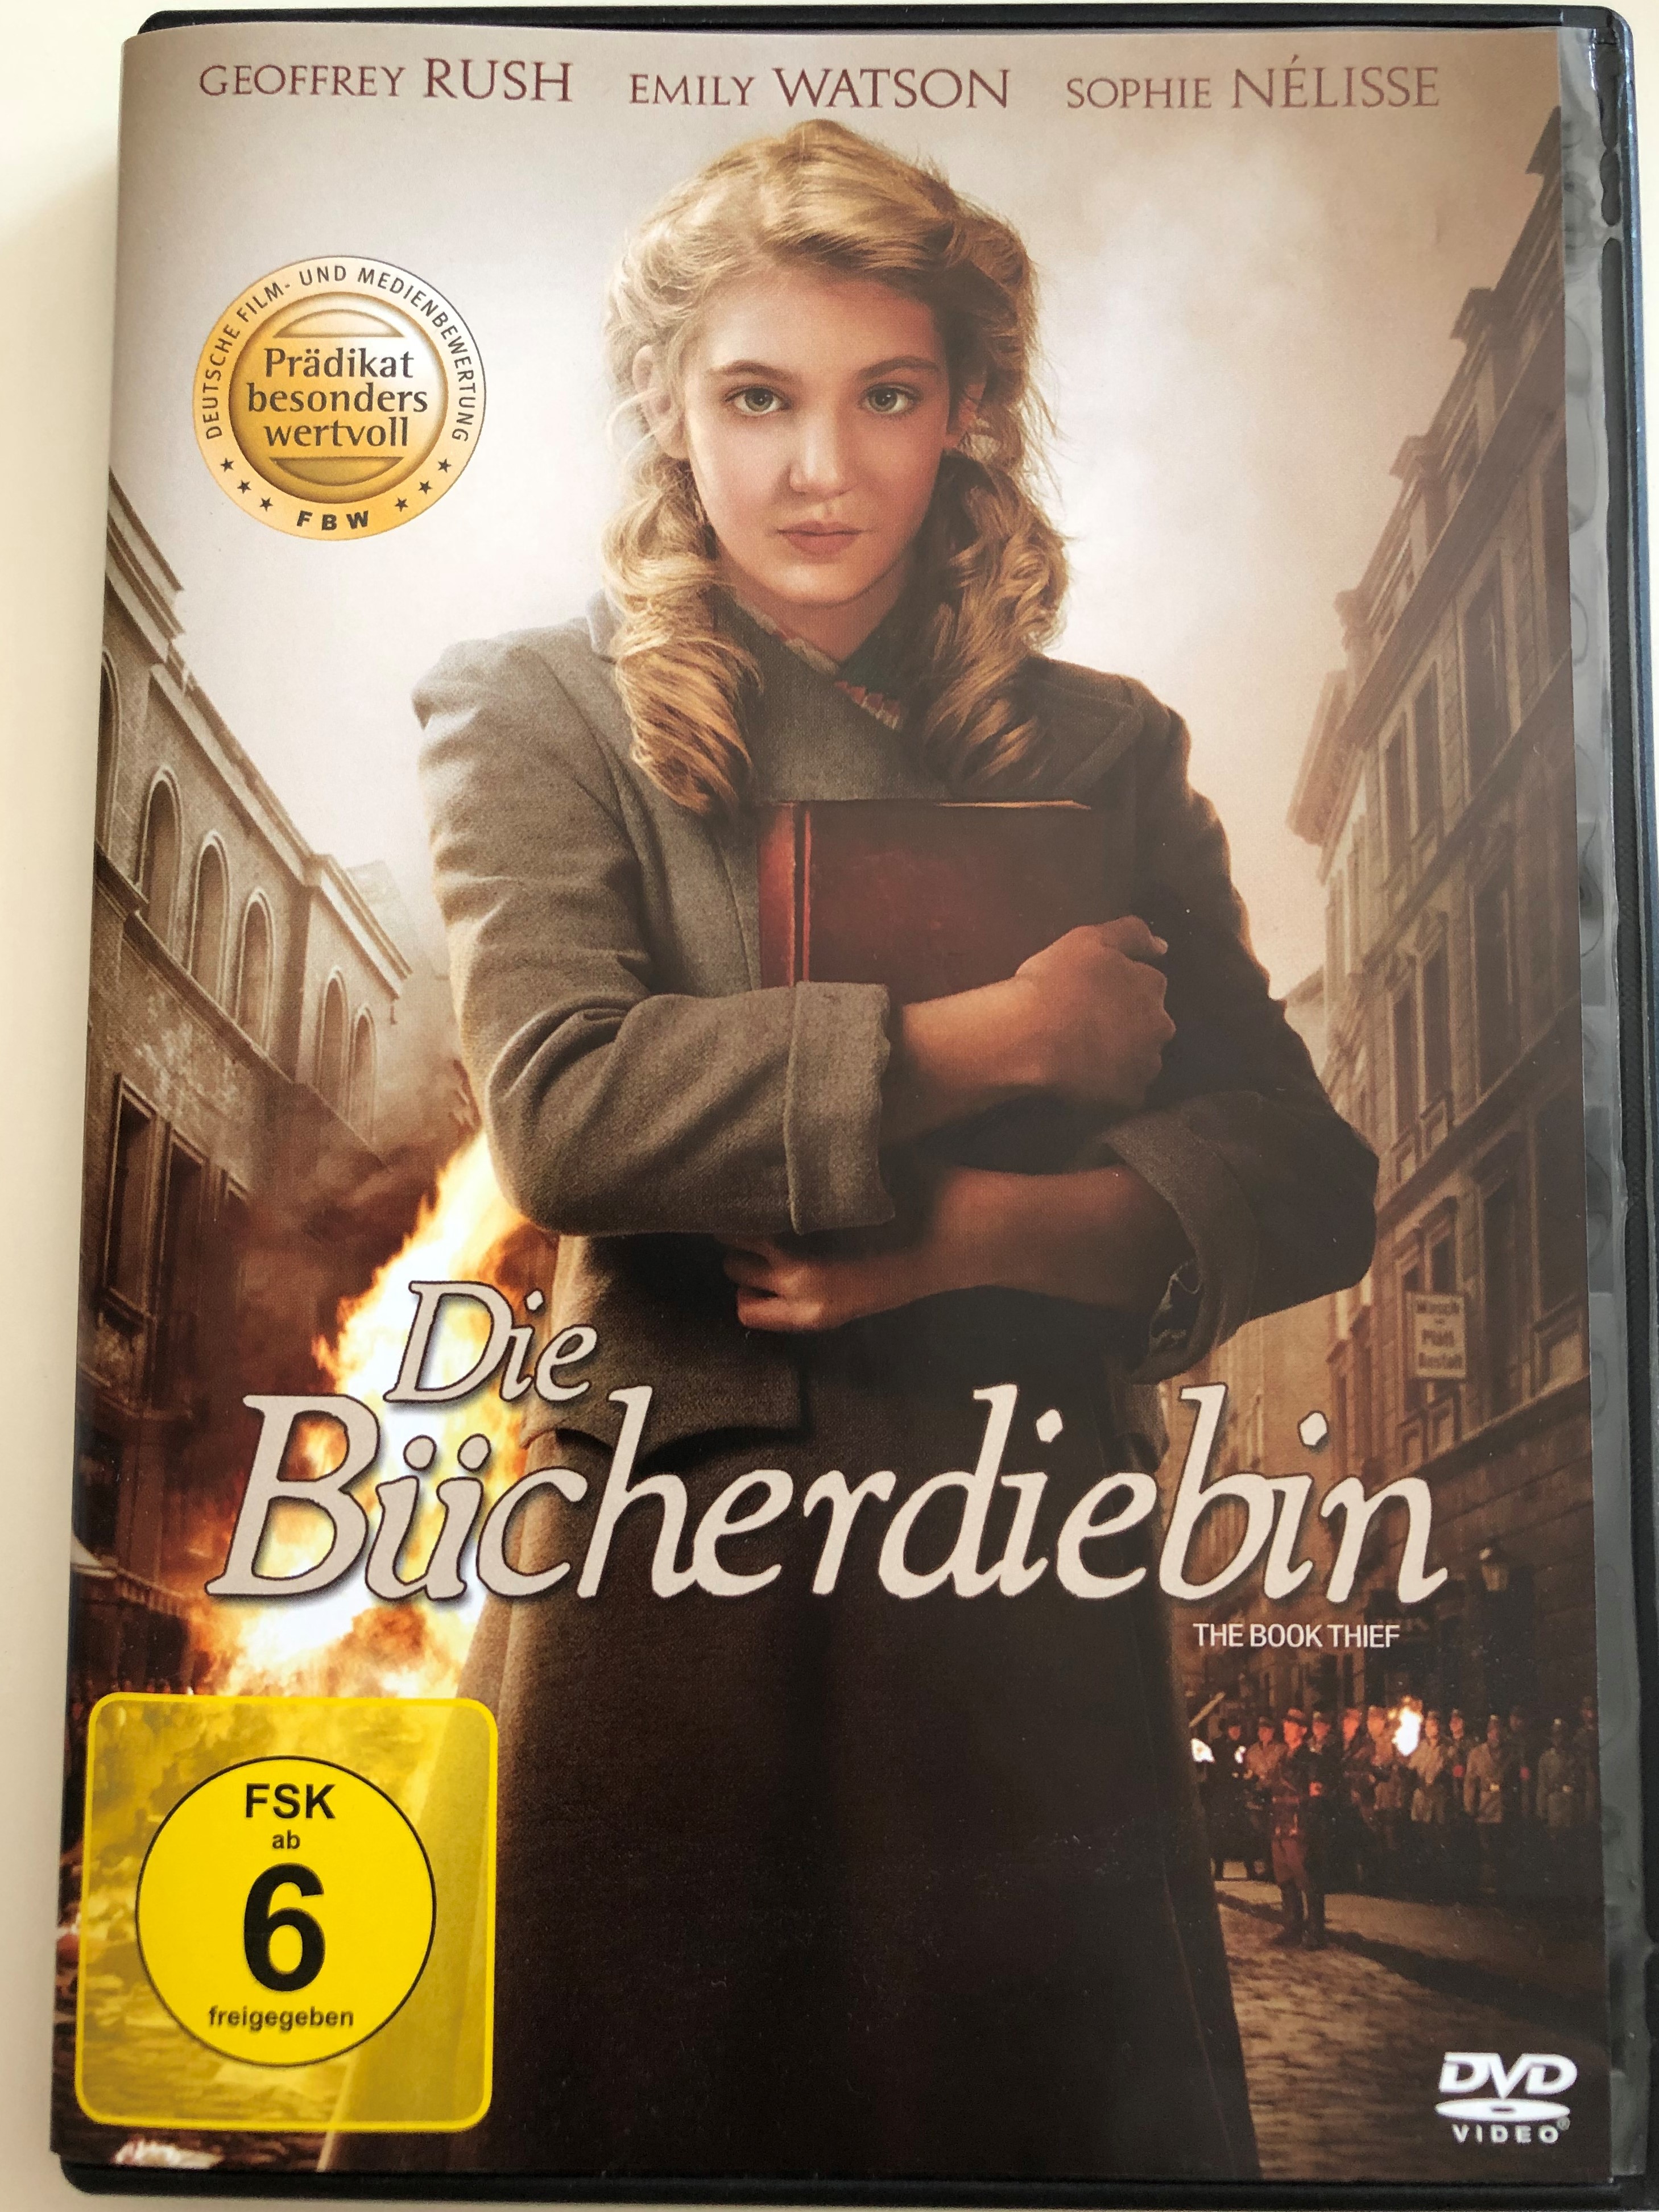 the-book-thief-dvd-2013-die-b-cherdiebin-directed-by-brian-percival-starring-geoffrey-rush-emily-watson-sophie-n-lisse-1-.jpg